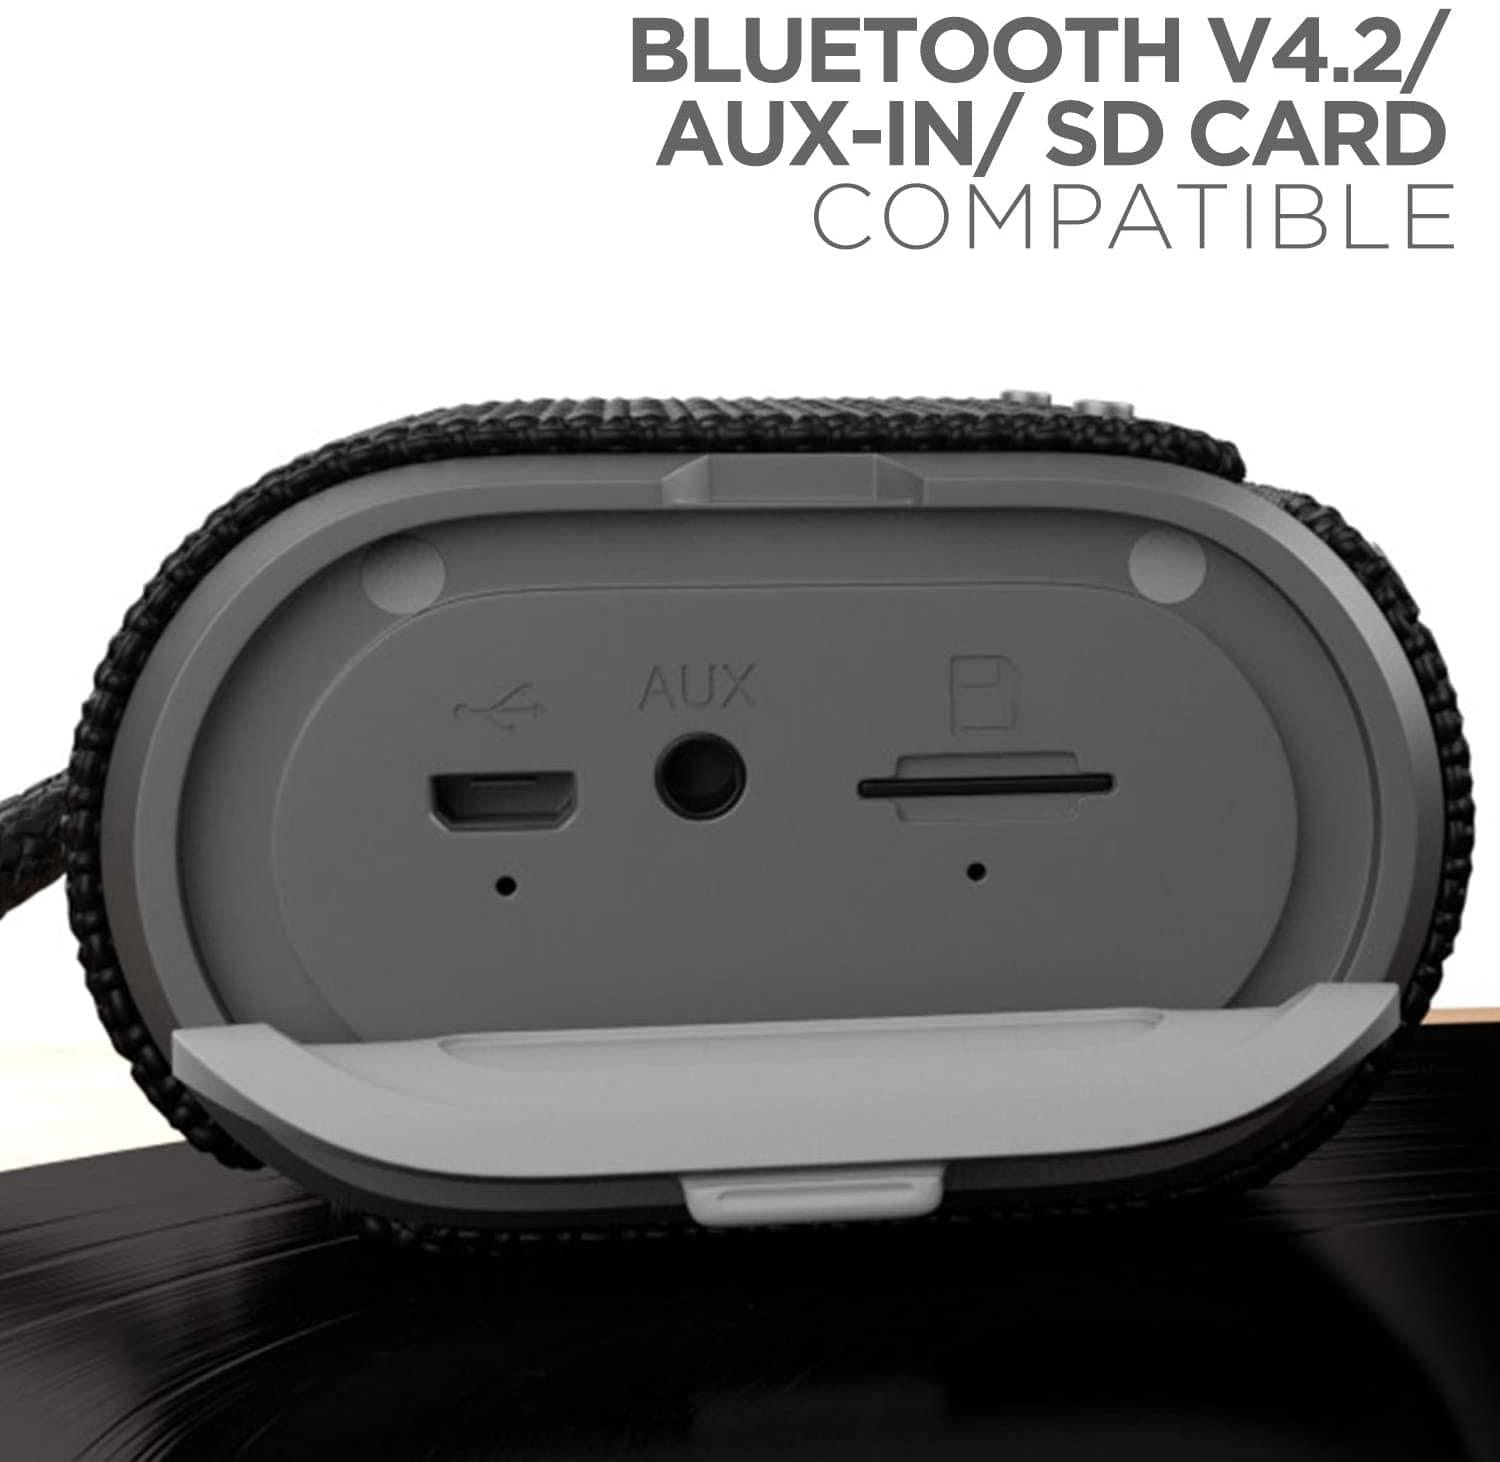 boAt Stone Grenade 5W Bluetooth Speaker-Bluetooth Speakers-dealsplant